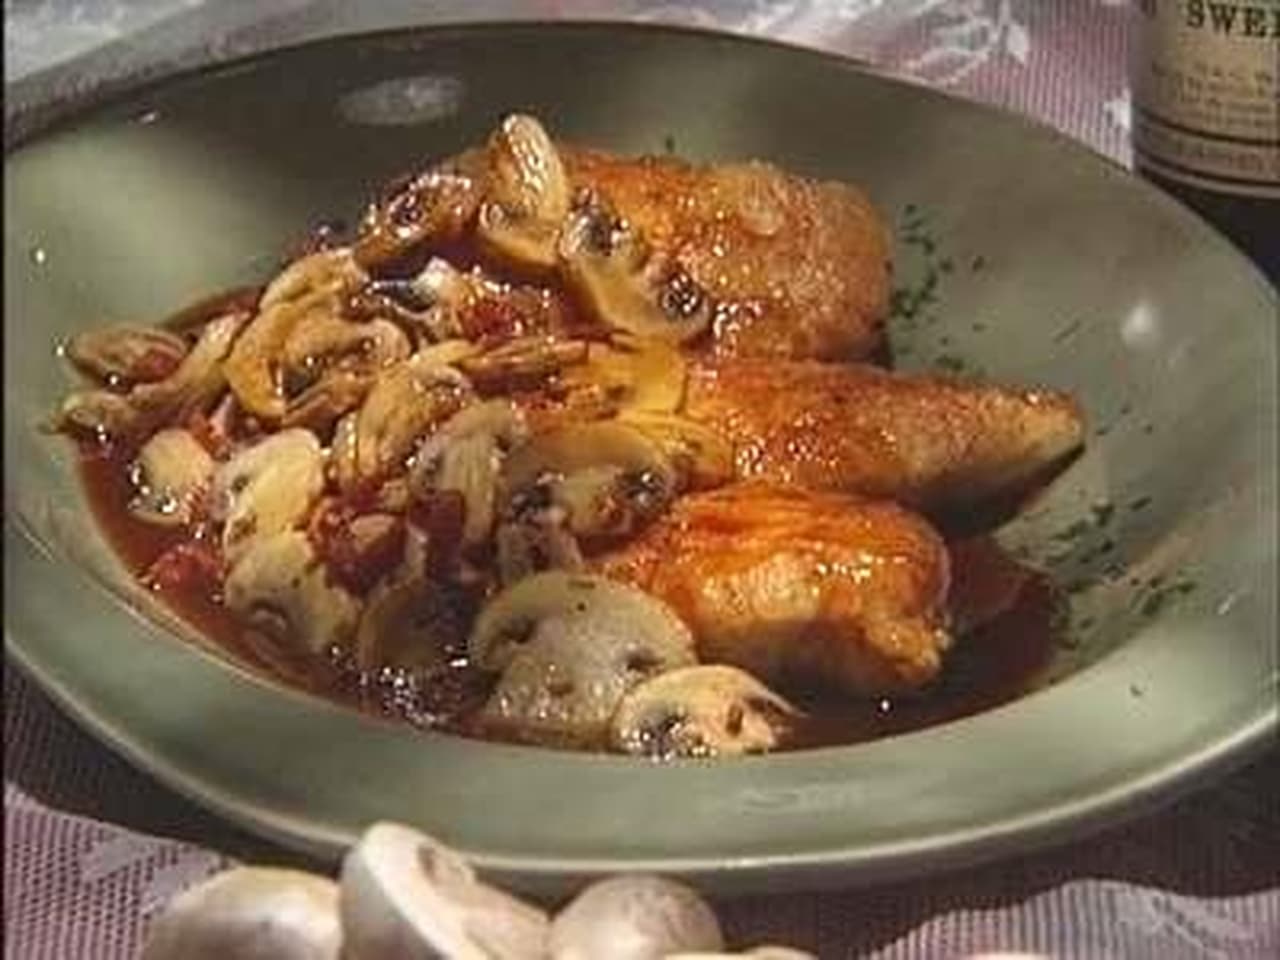 America's Test Kitchen - Season 2 Episode 9 : Chicken Cutlets 101